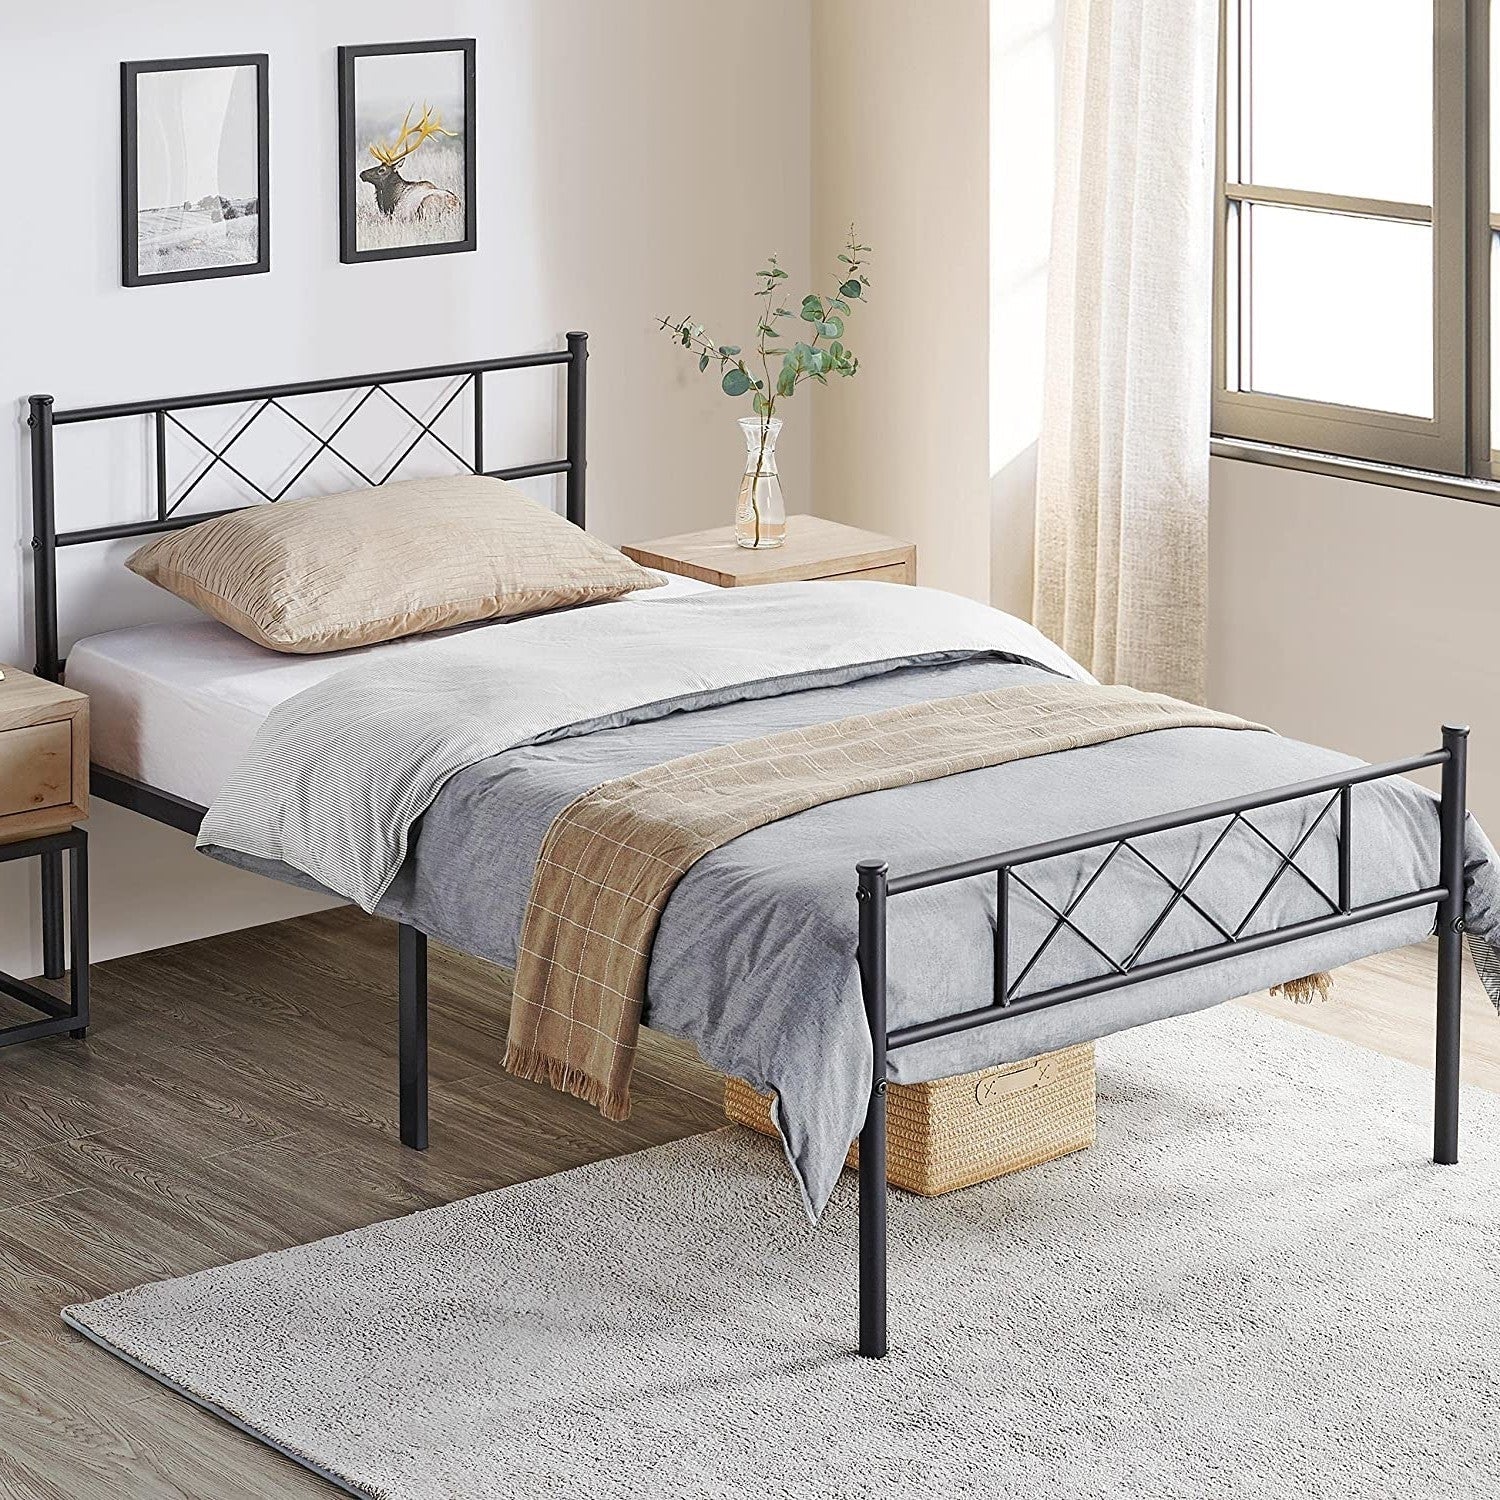 Bedroom > Bed Frames > Platform Beds - Twin Size Traditional Powder Coated Slatted Metal Platform Bed